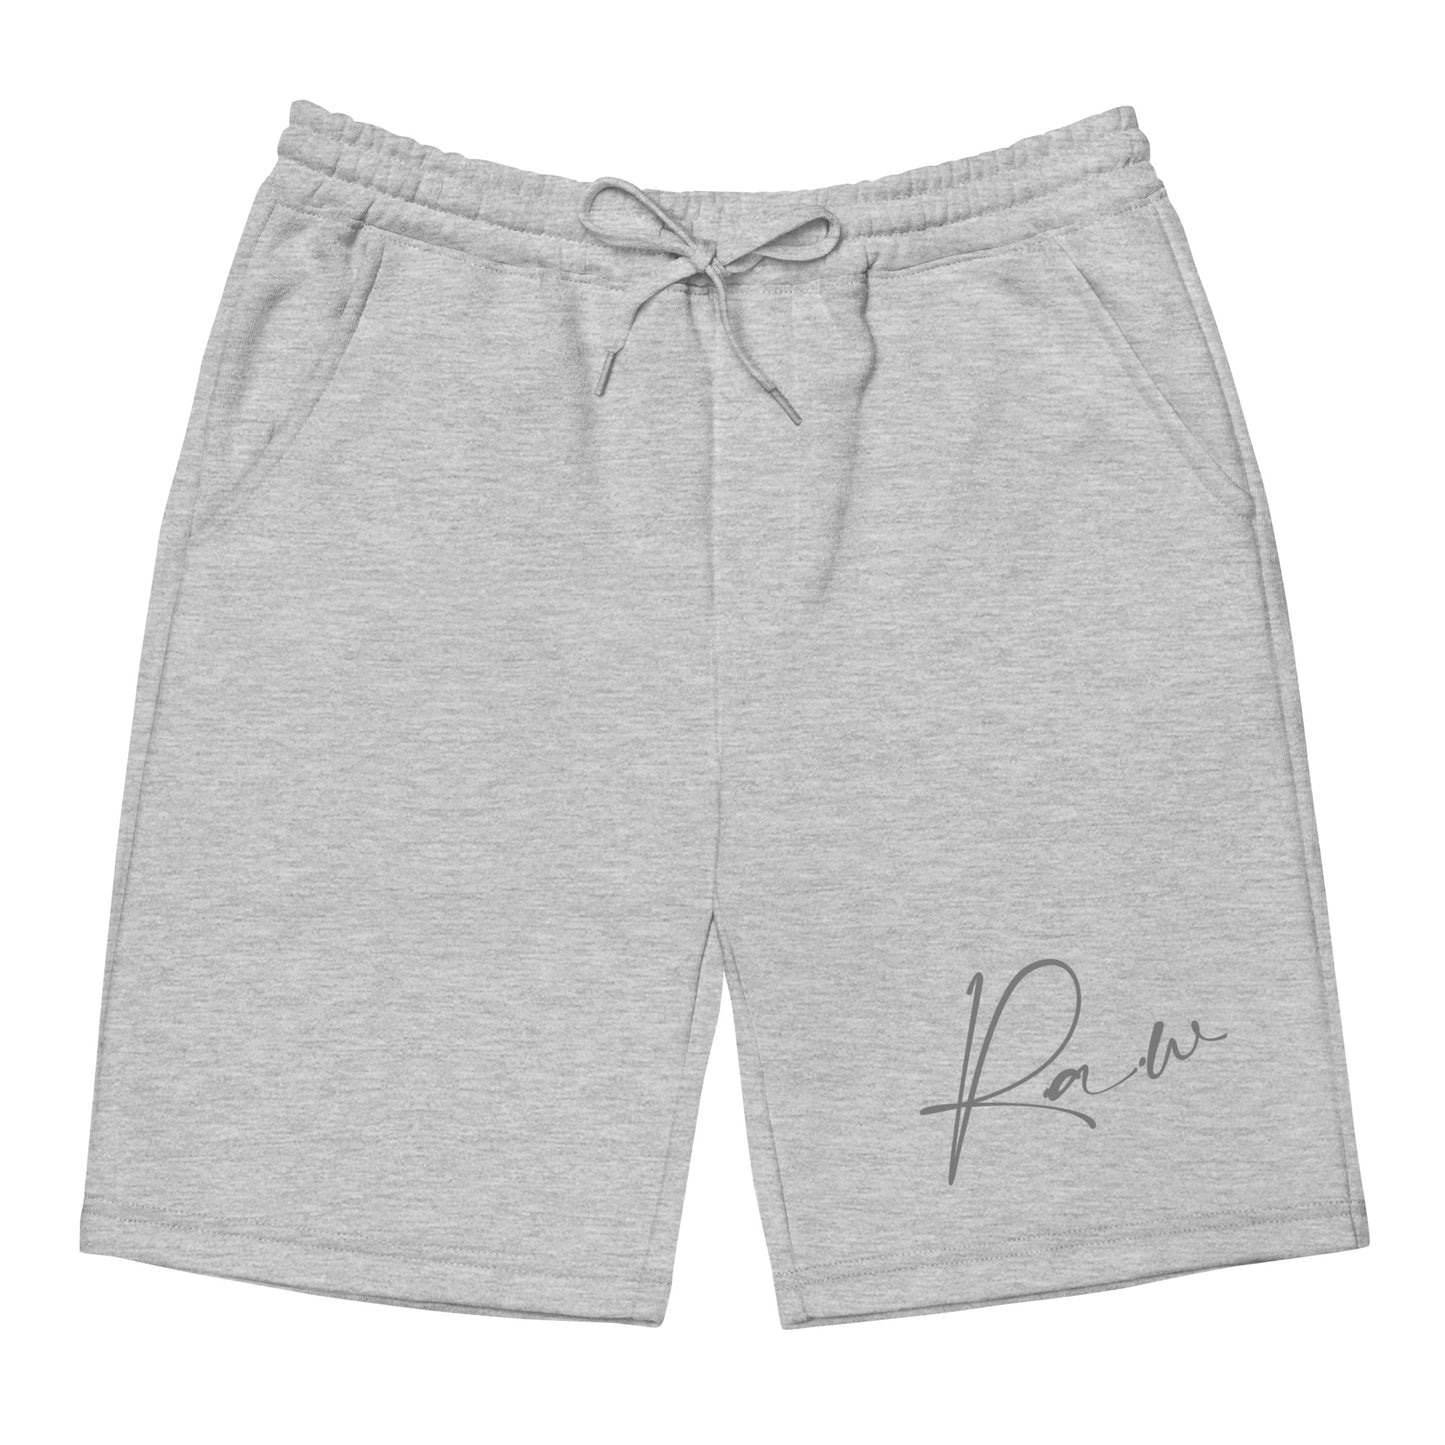 RAW (v4) Men's fleece shorts